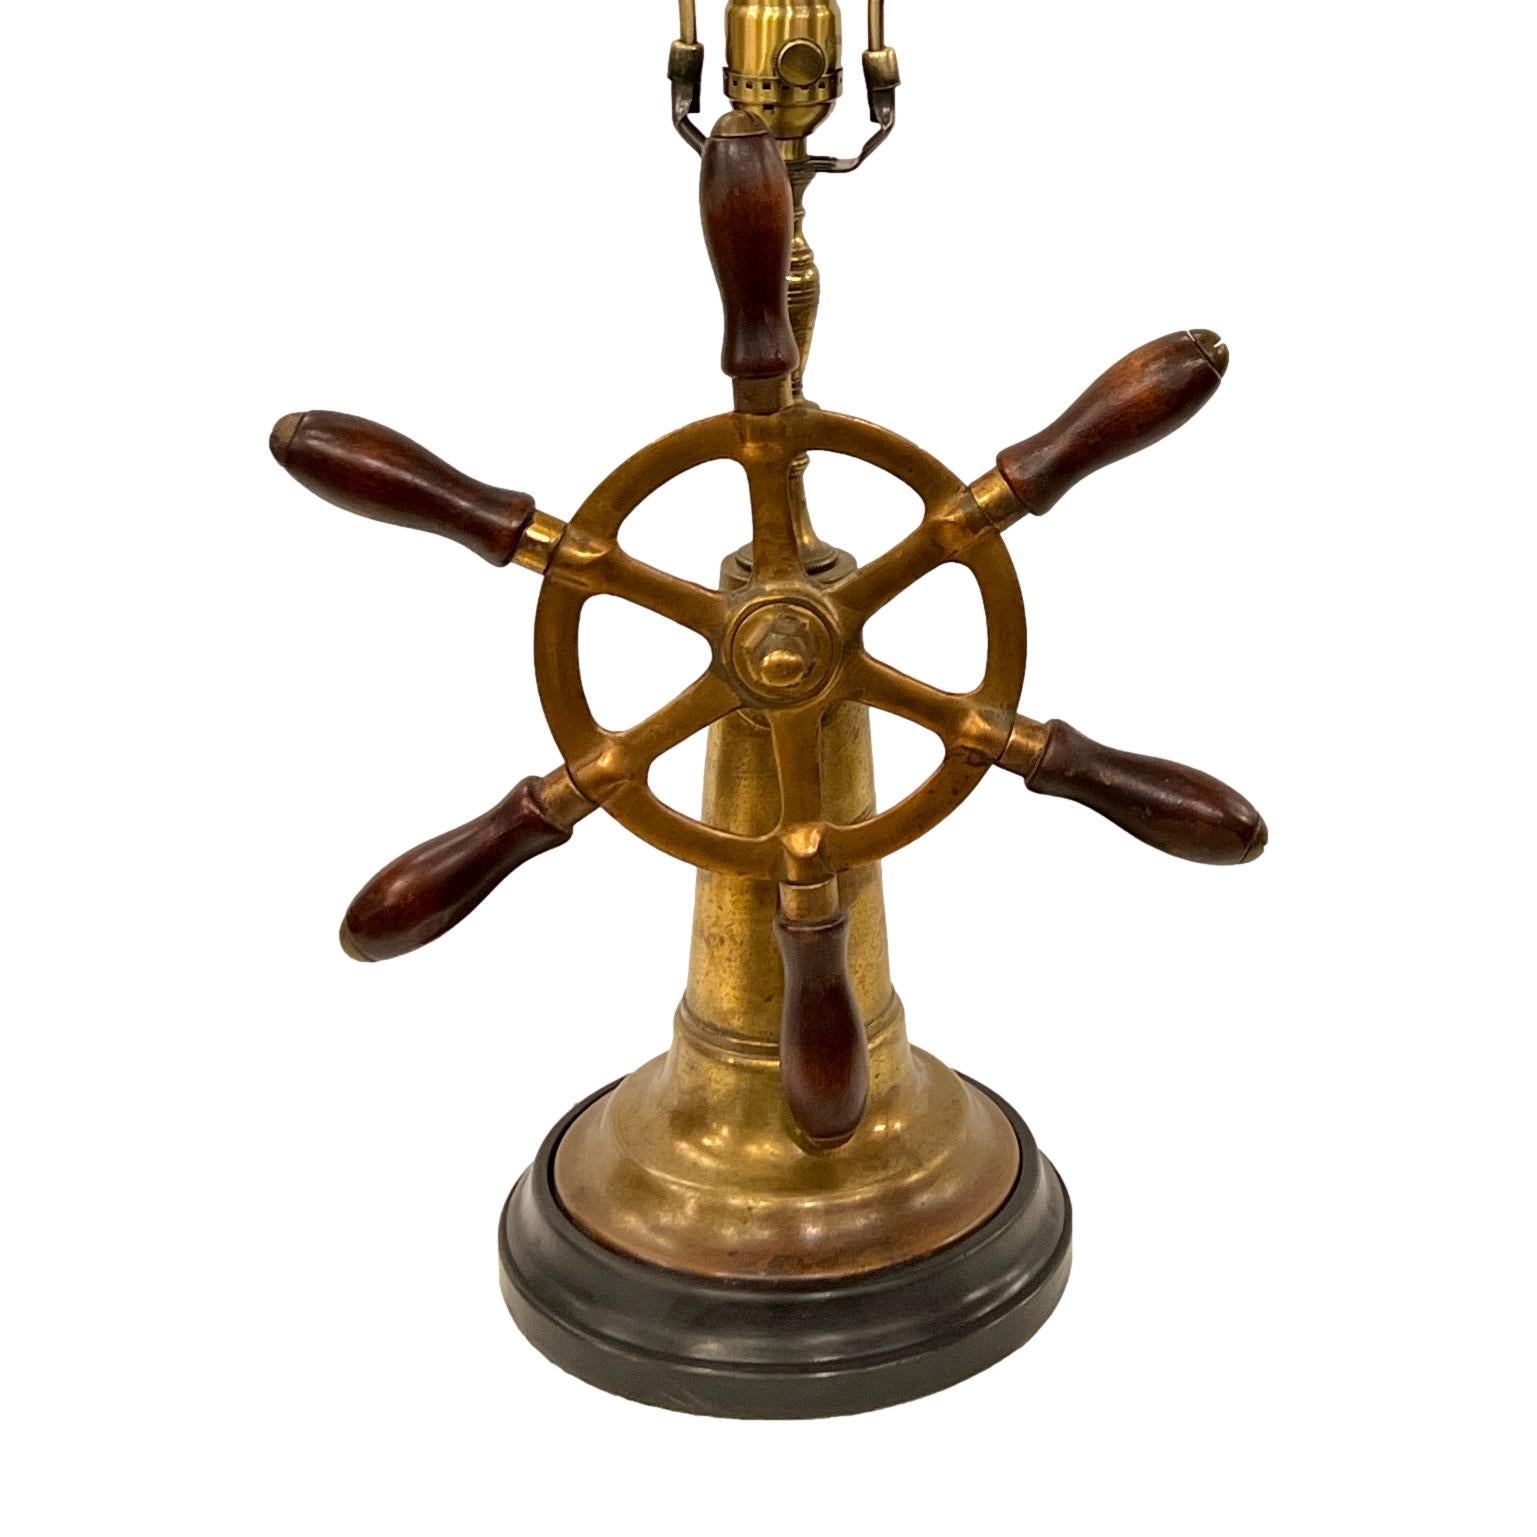 Une seule lampe de table anglaise en bois et laiton datant d'environ 1900, avec patine d'origine.

Mesures :
Hauteur du corps : 15
Hauteur jusqu'au support de l'abat-jour : 24